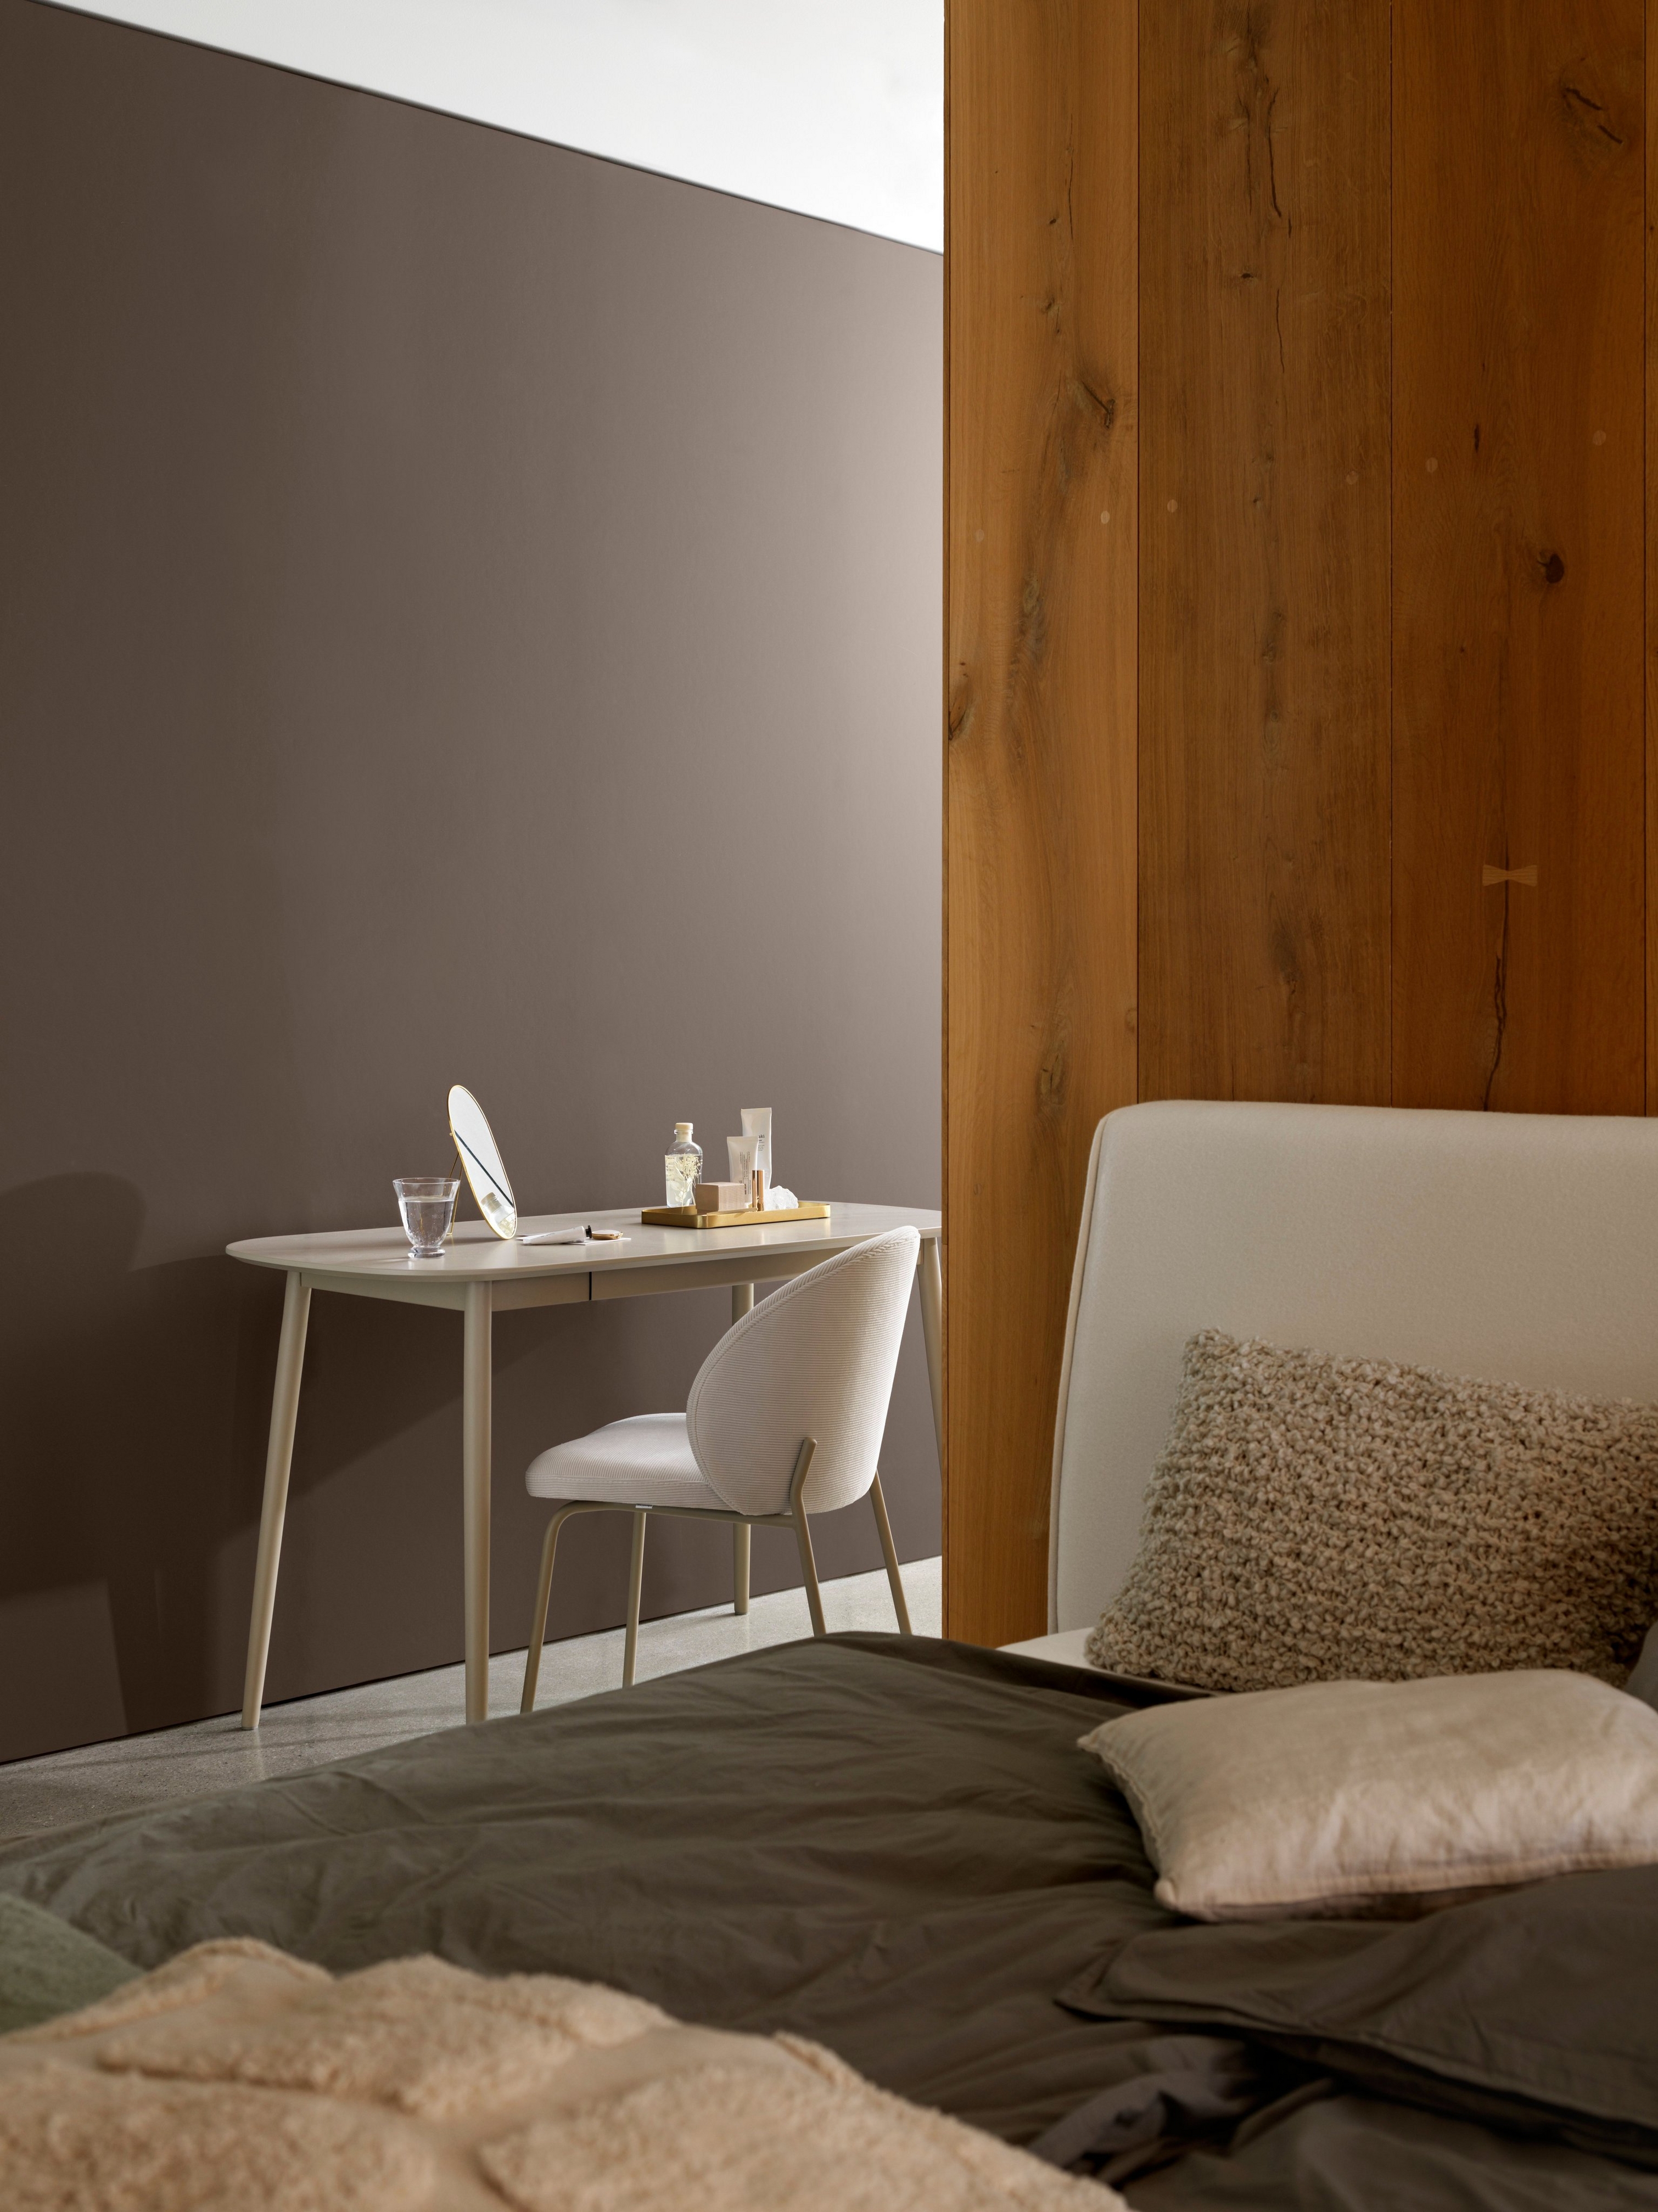 Esquina del dormitorio con una sencilla configuración de escritorio, silla y ropa de cama acogedora cerca de un panel de madera.